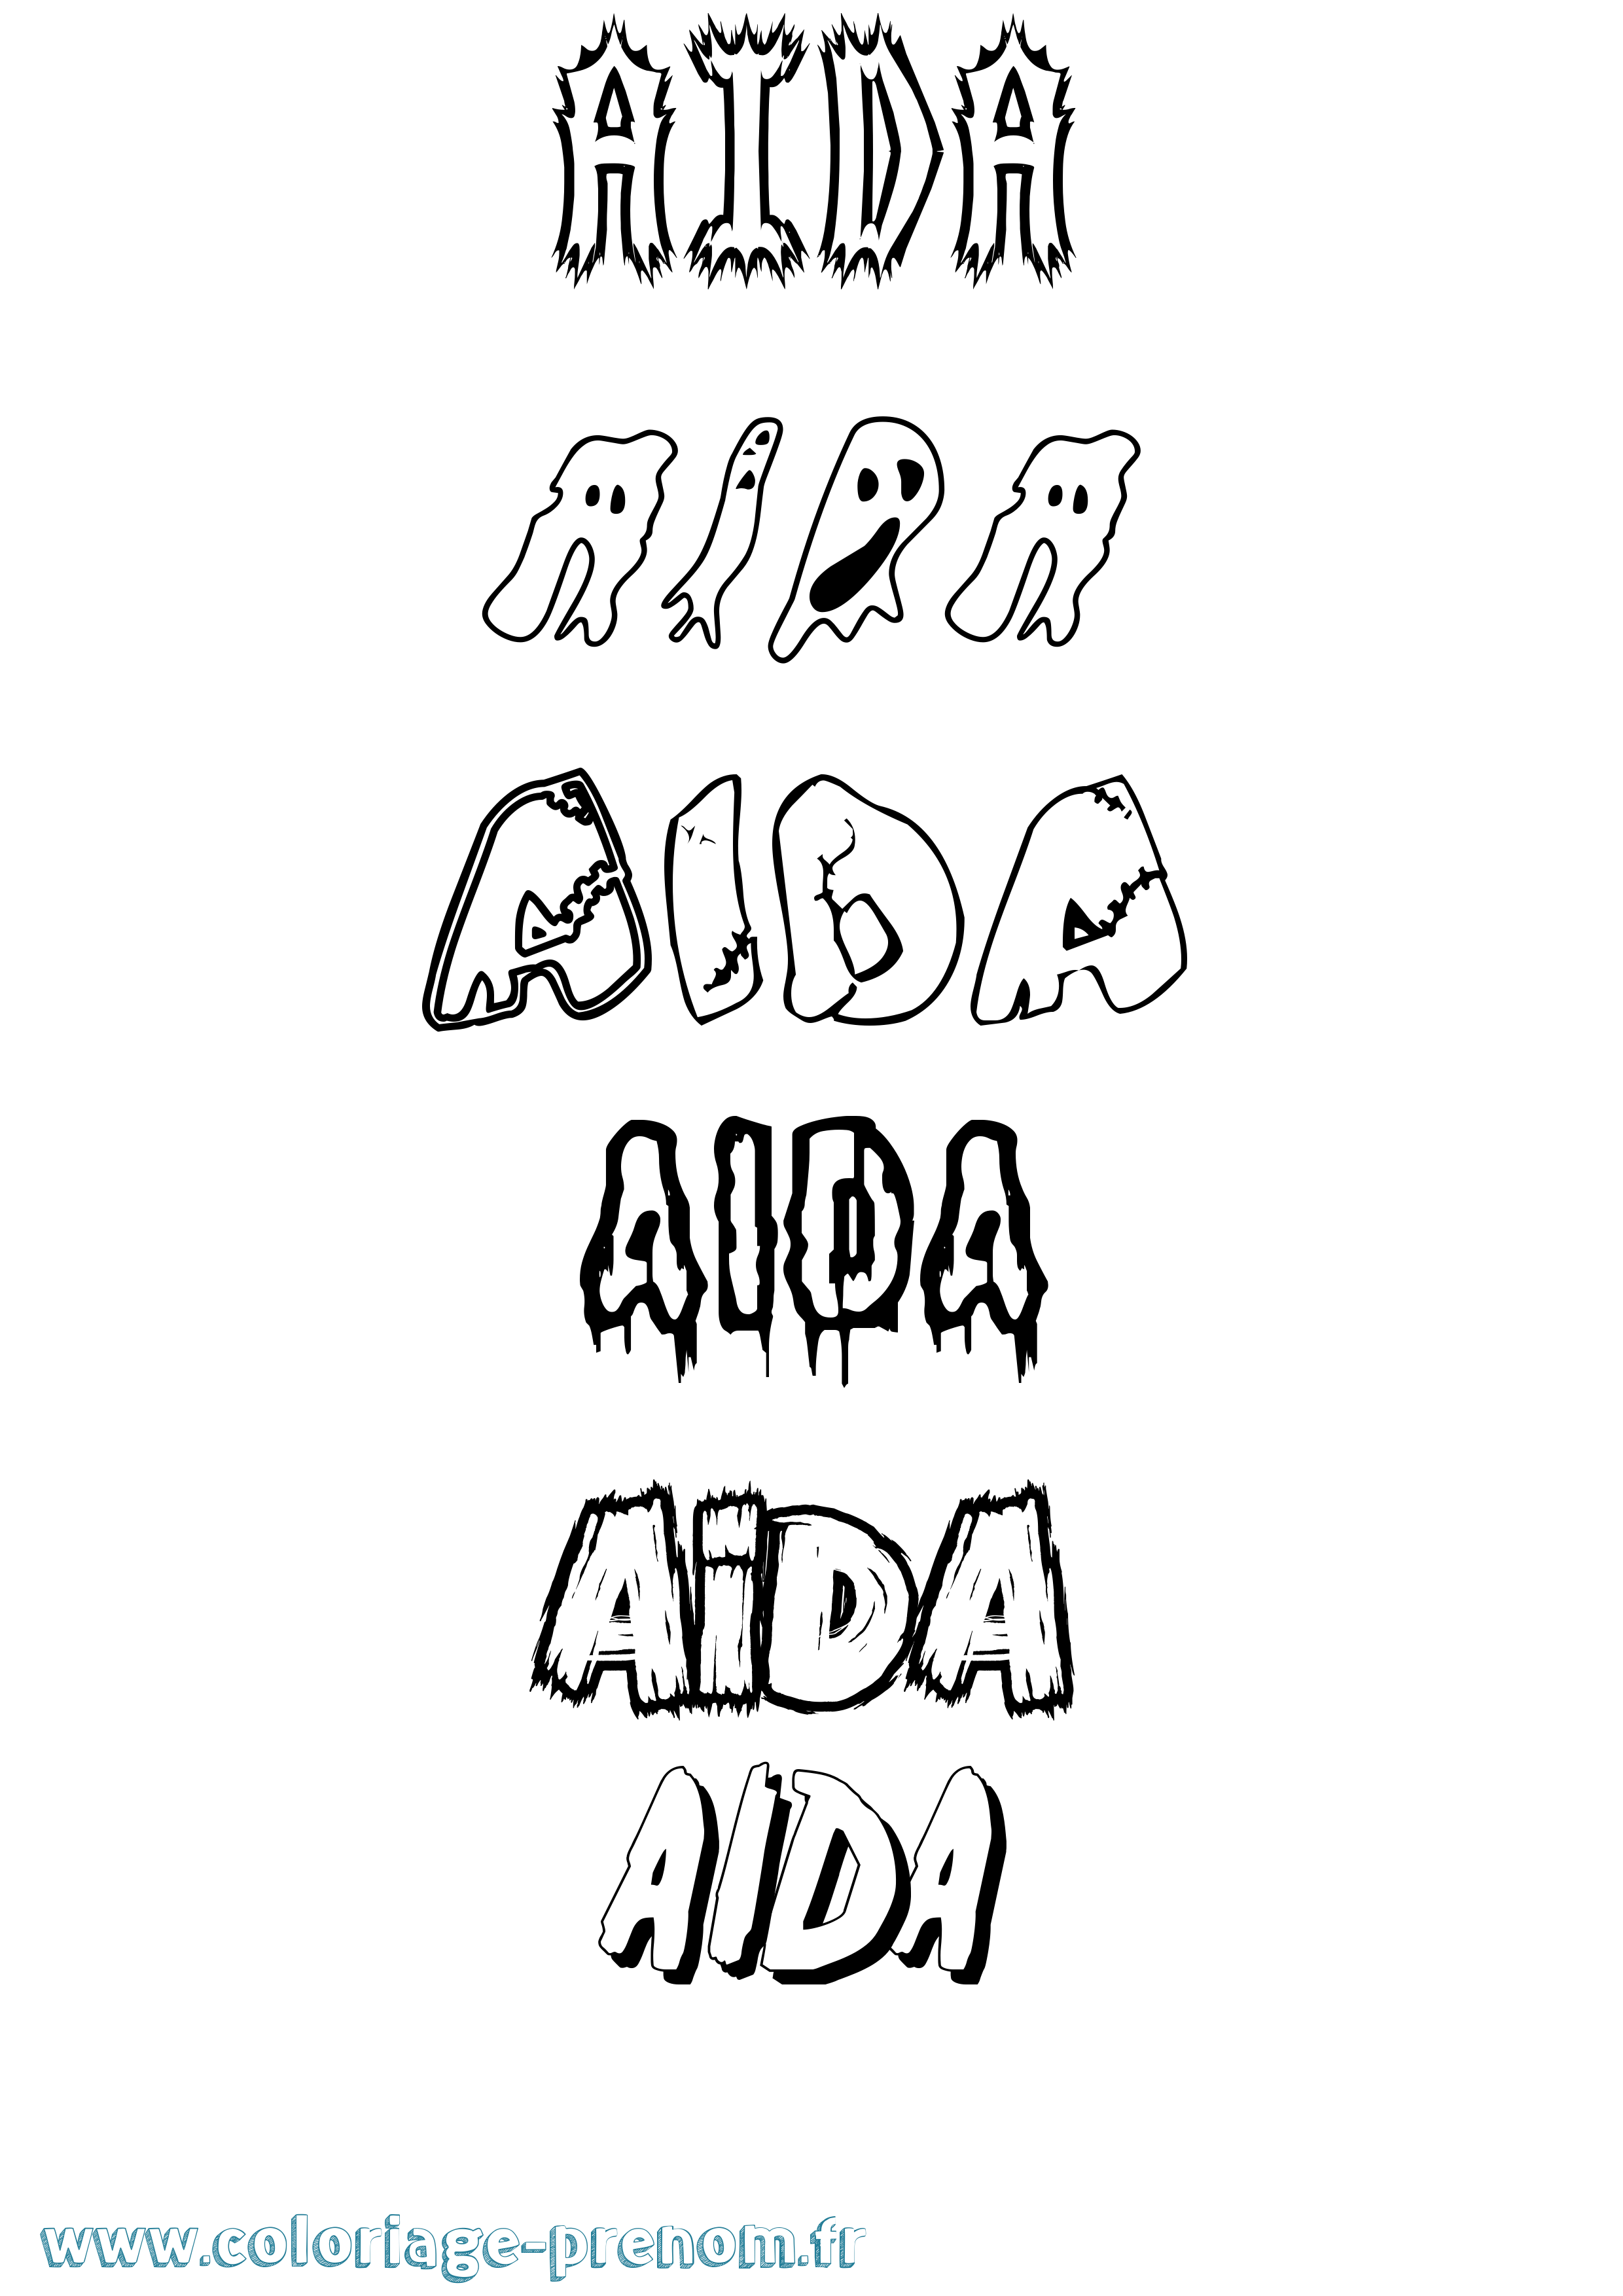 Coloriage prénom Aida Frisson